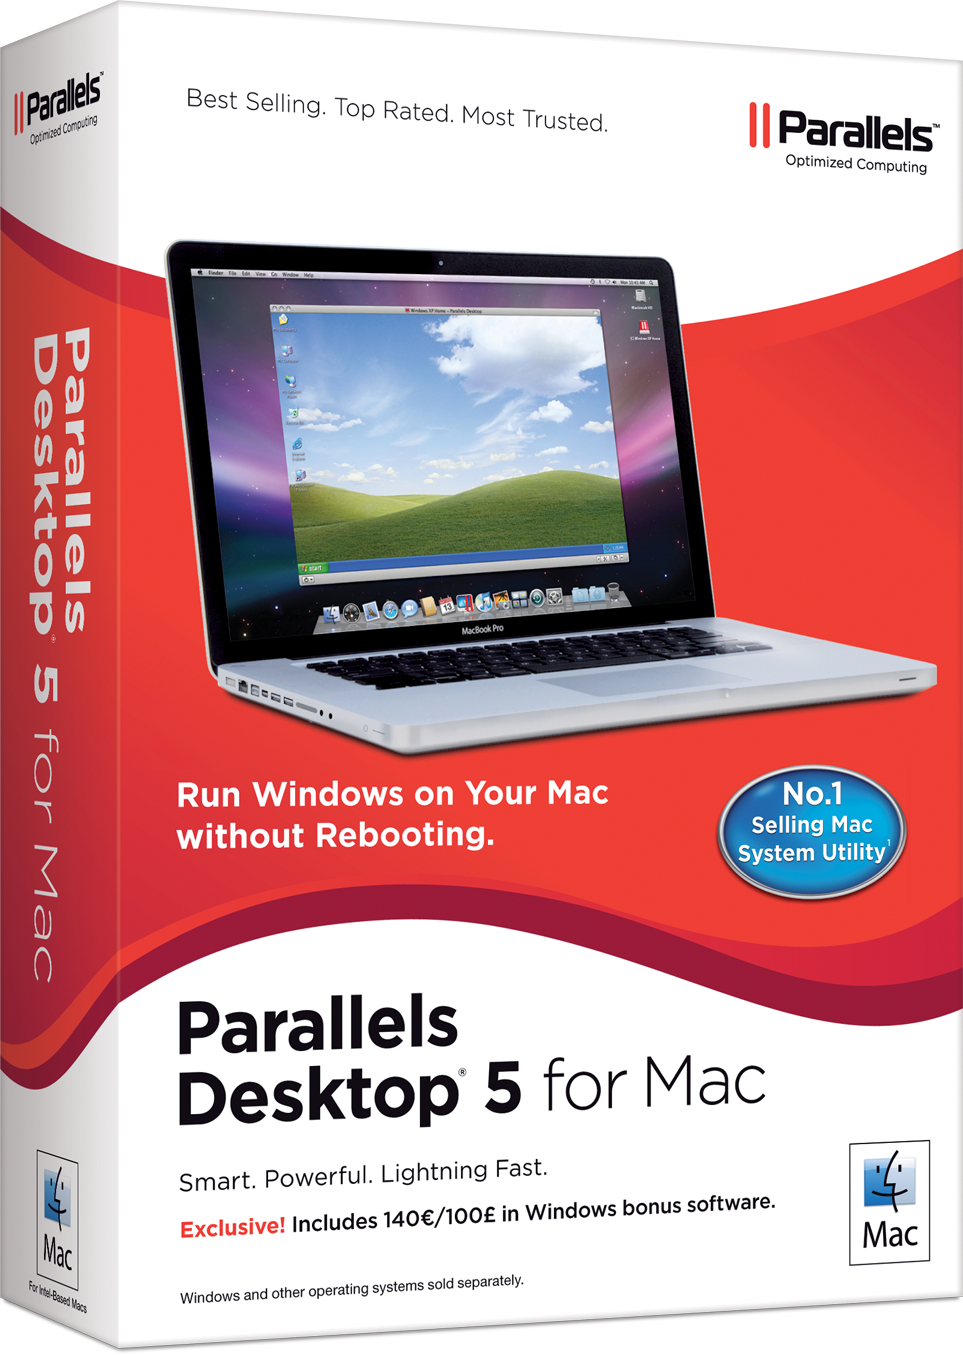 Caixa do Parallels Desktop 5 para Mac